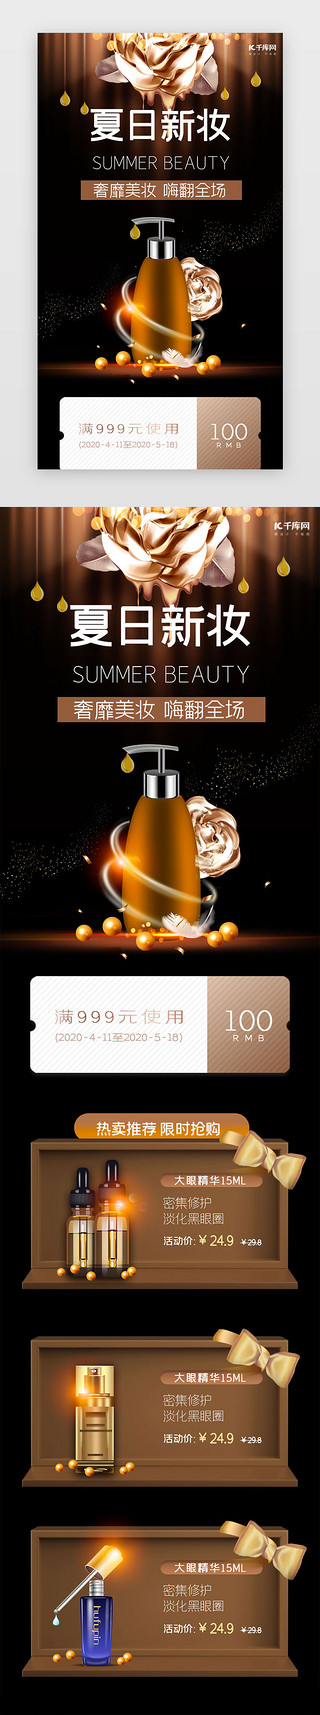 化妆品春夏海报UI设计素材_棕色简约夏日美妆促销h5长图电商